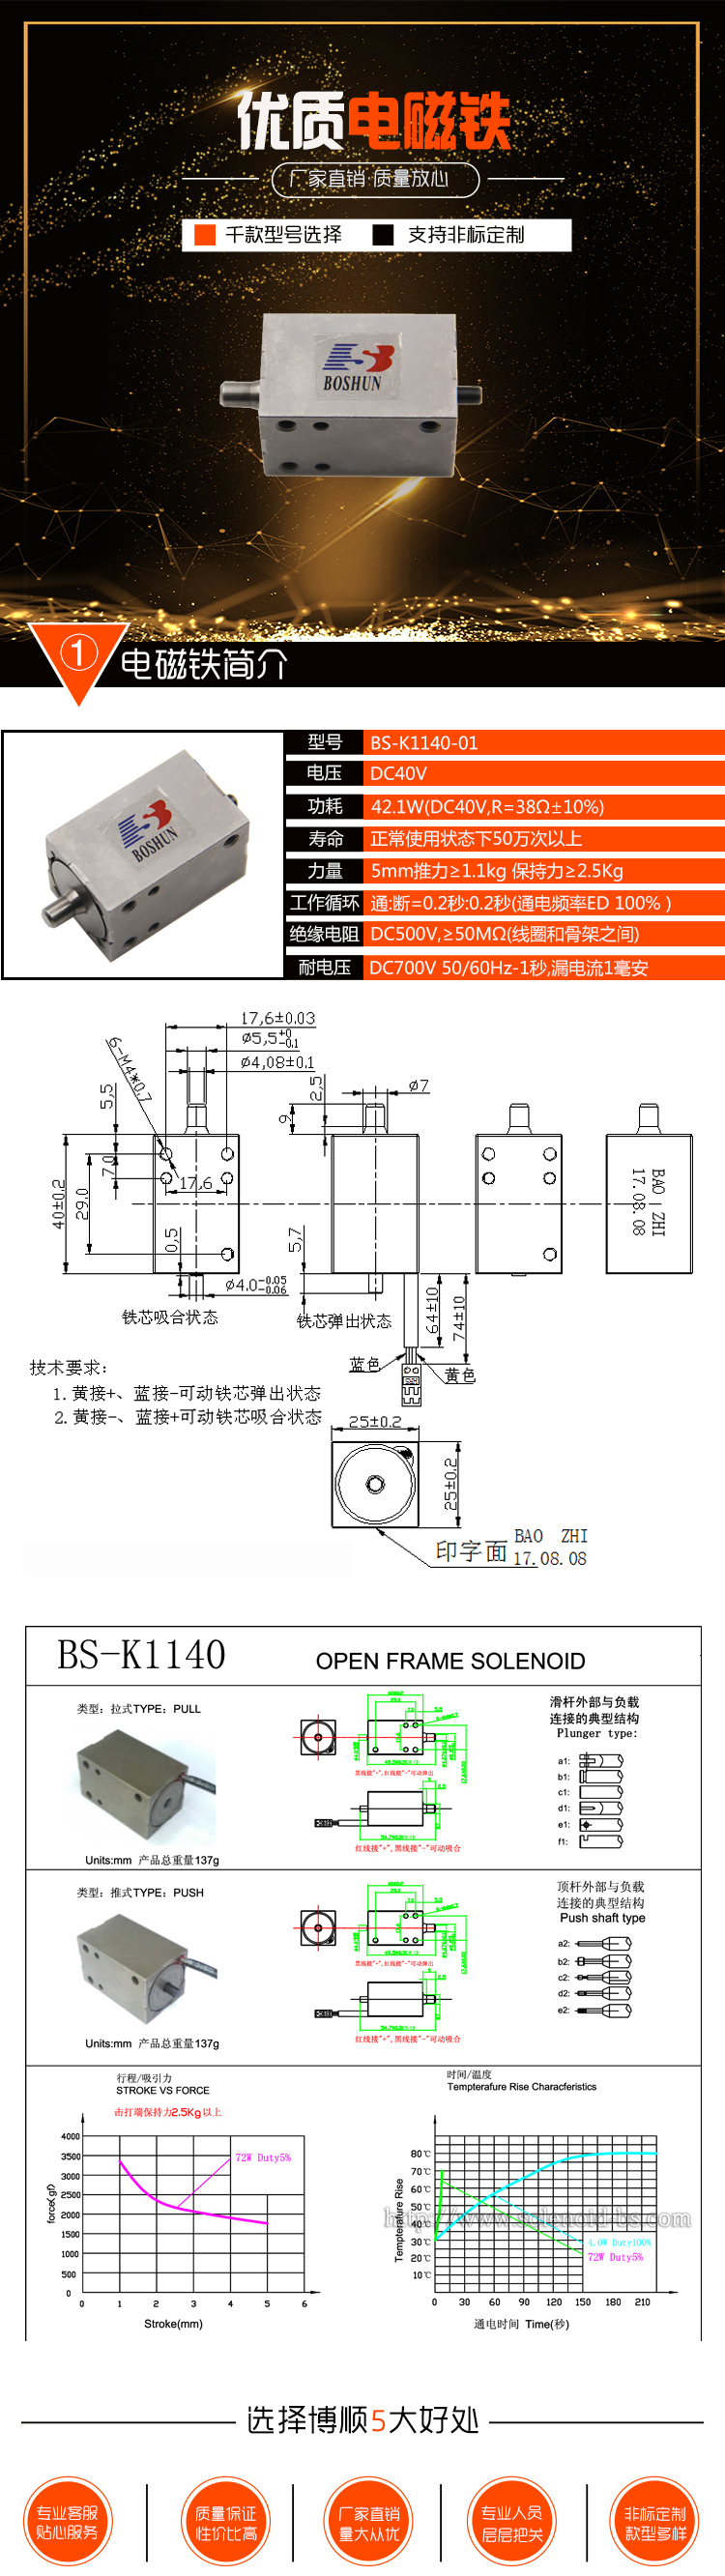 织带机电磁铁 BS-K1140-01